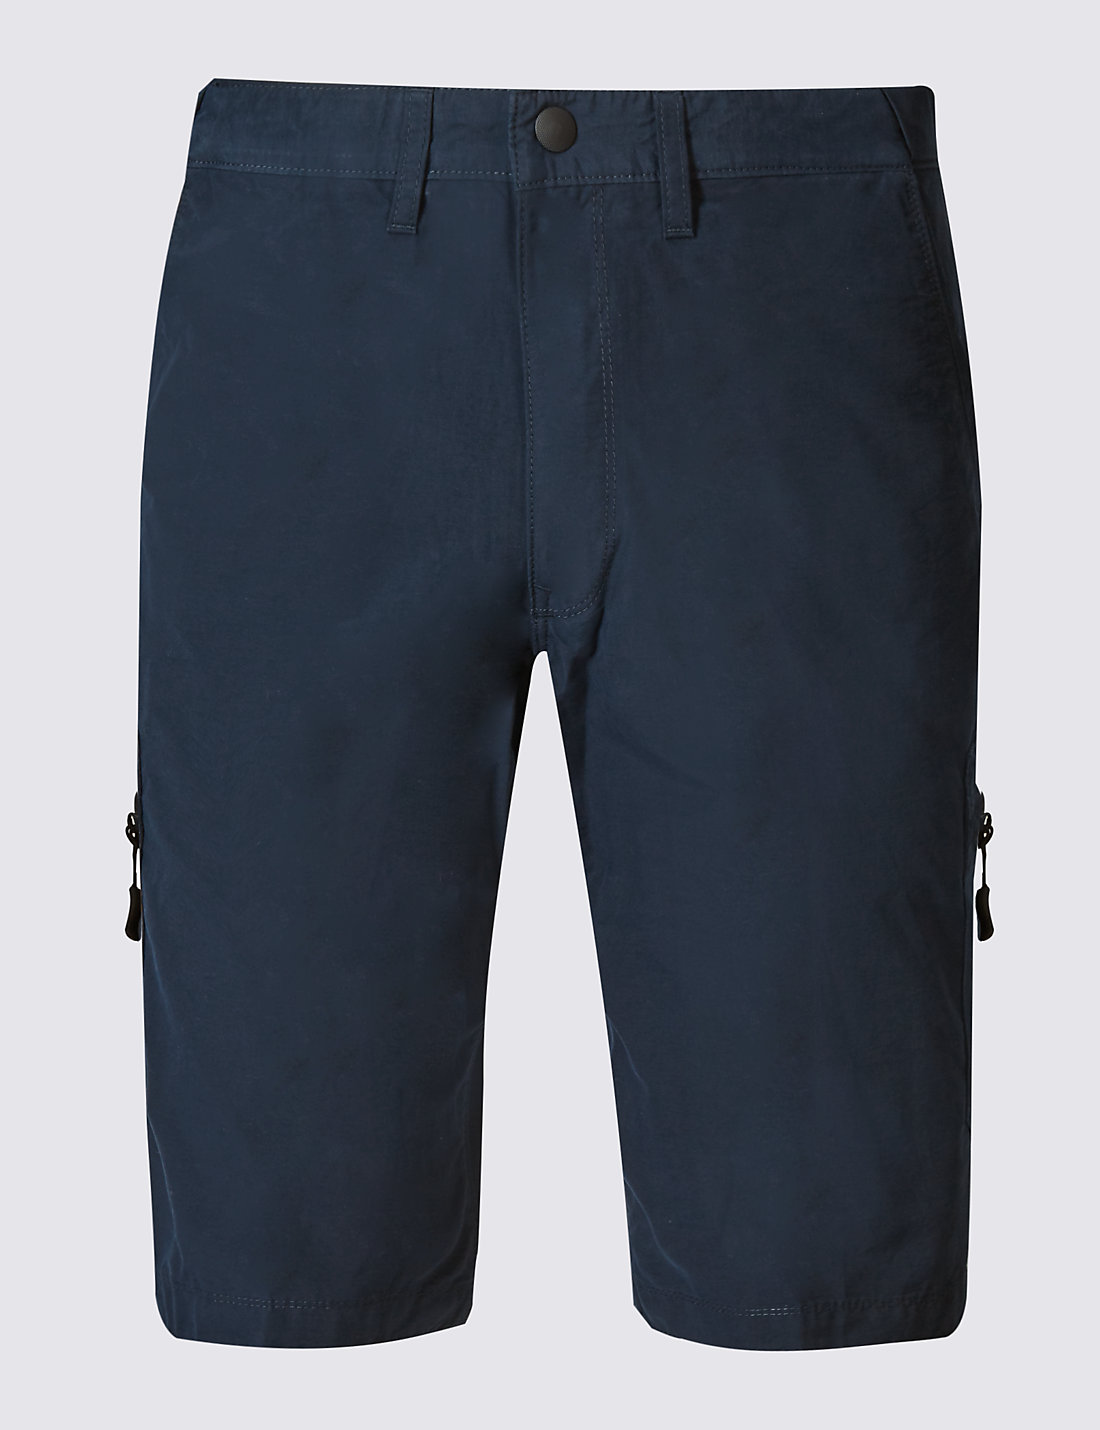 Mens Blue Shorts | Navy, Light, dark & Royal Mens Short | M&S